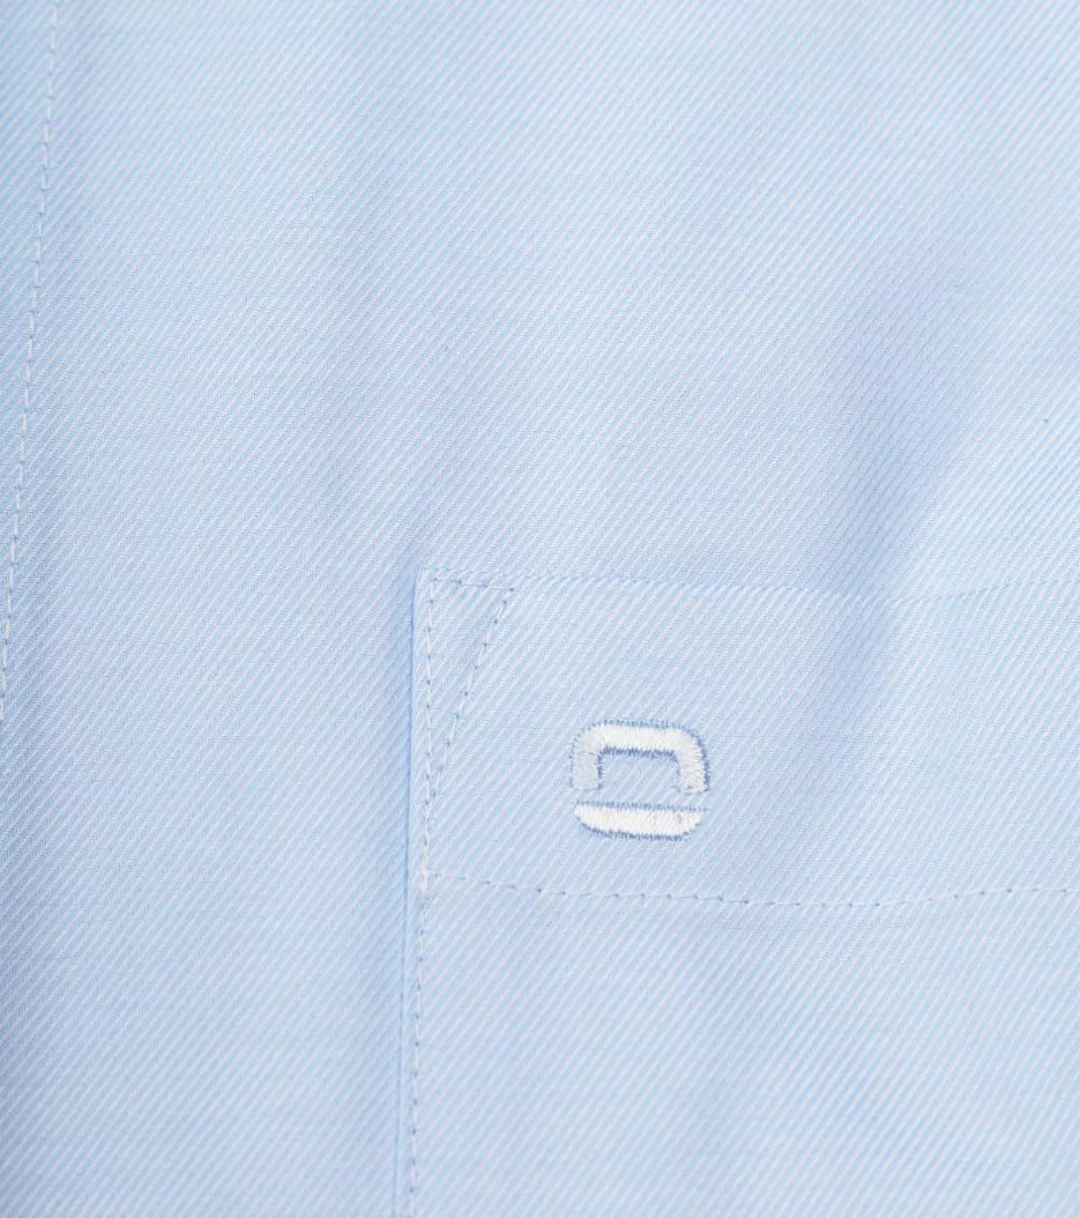 OLYMP Baumwolle Hemd Luxor Blau - Größe 40 günstig online kaufen